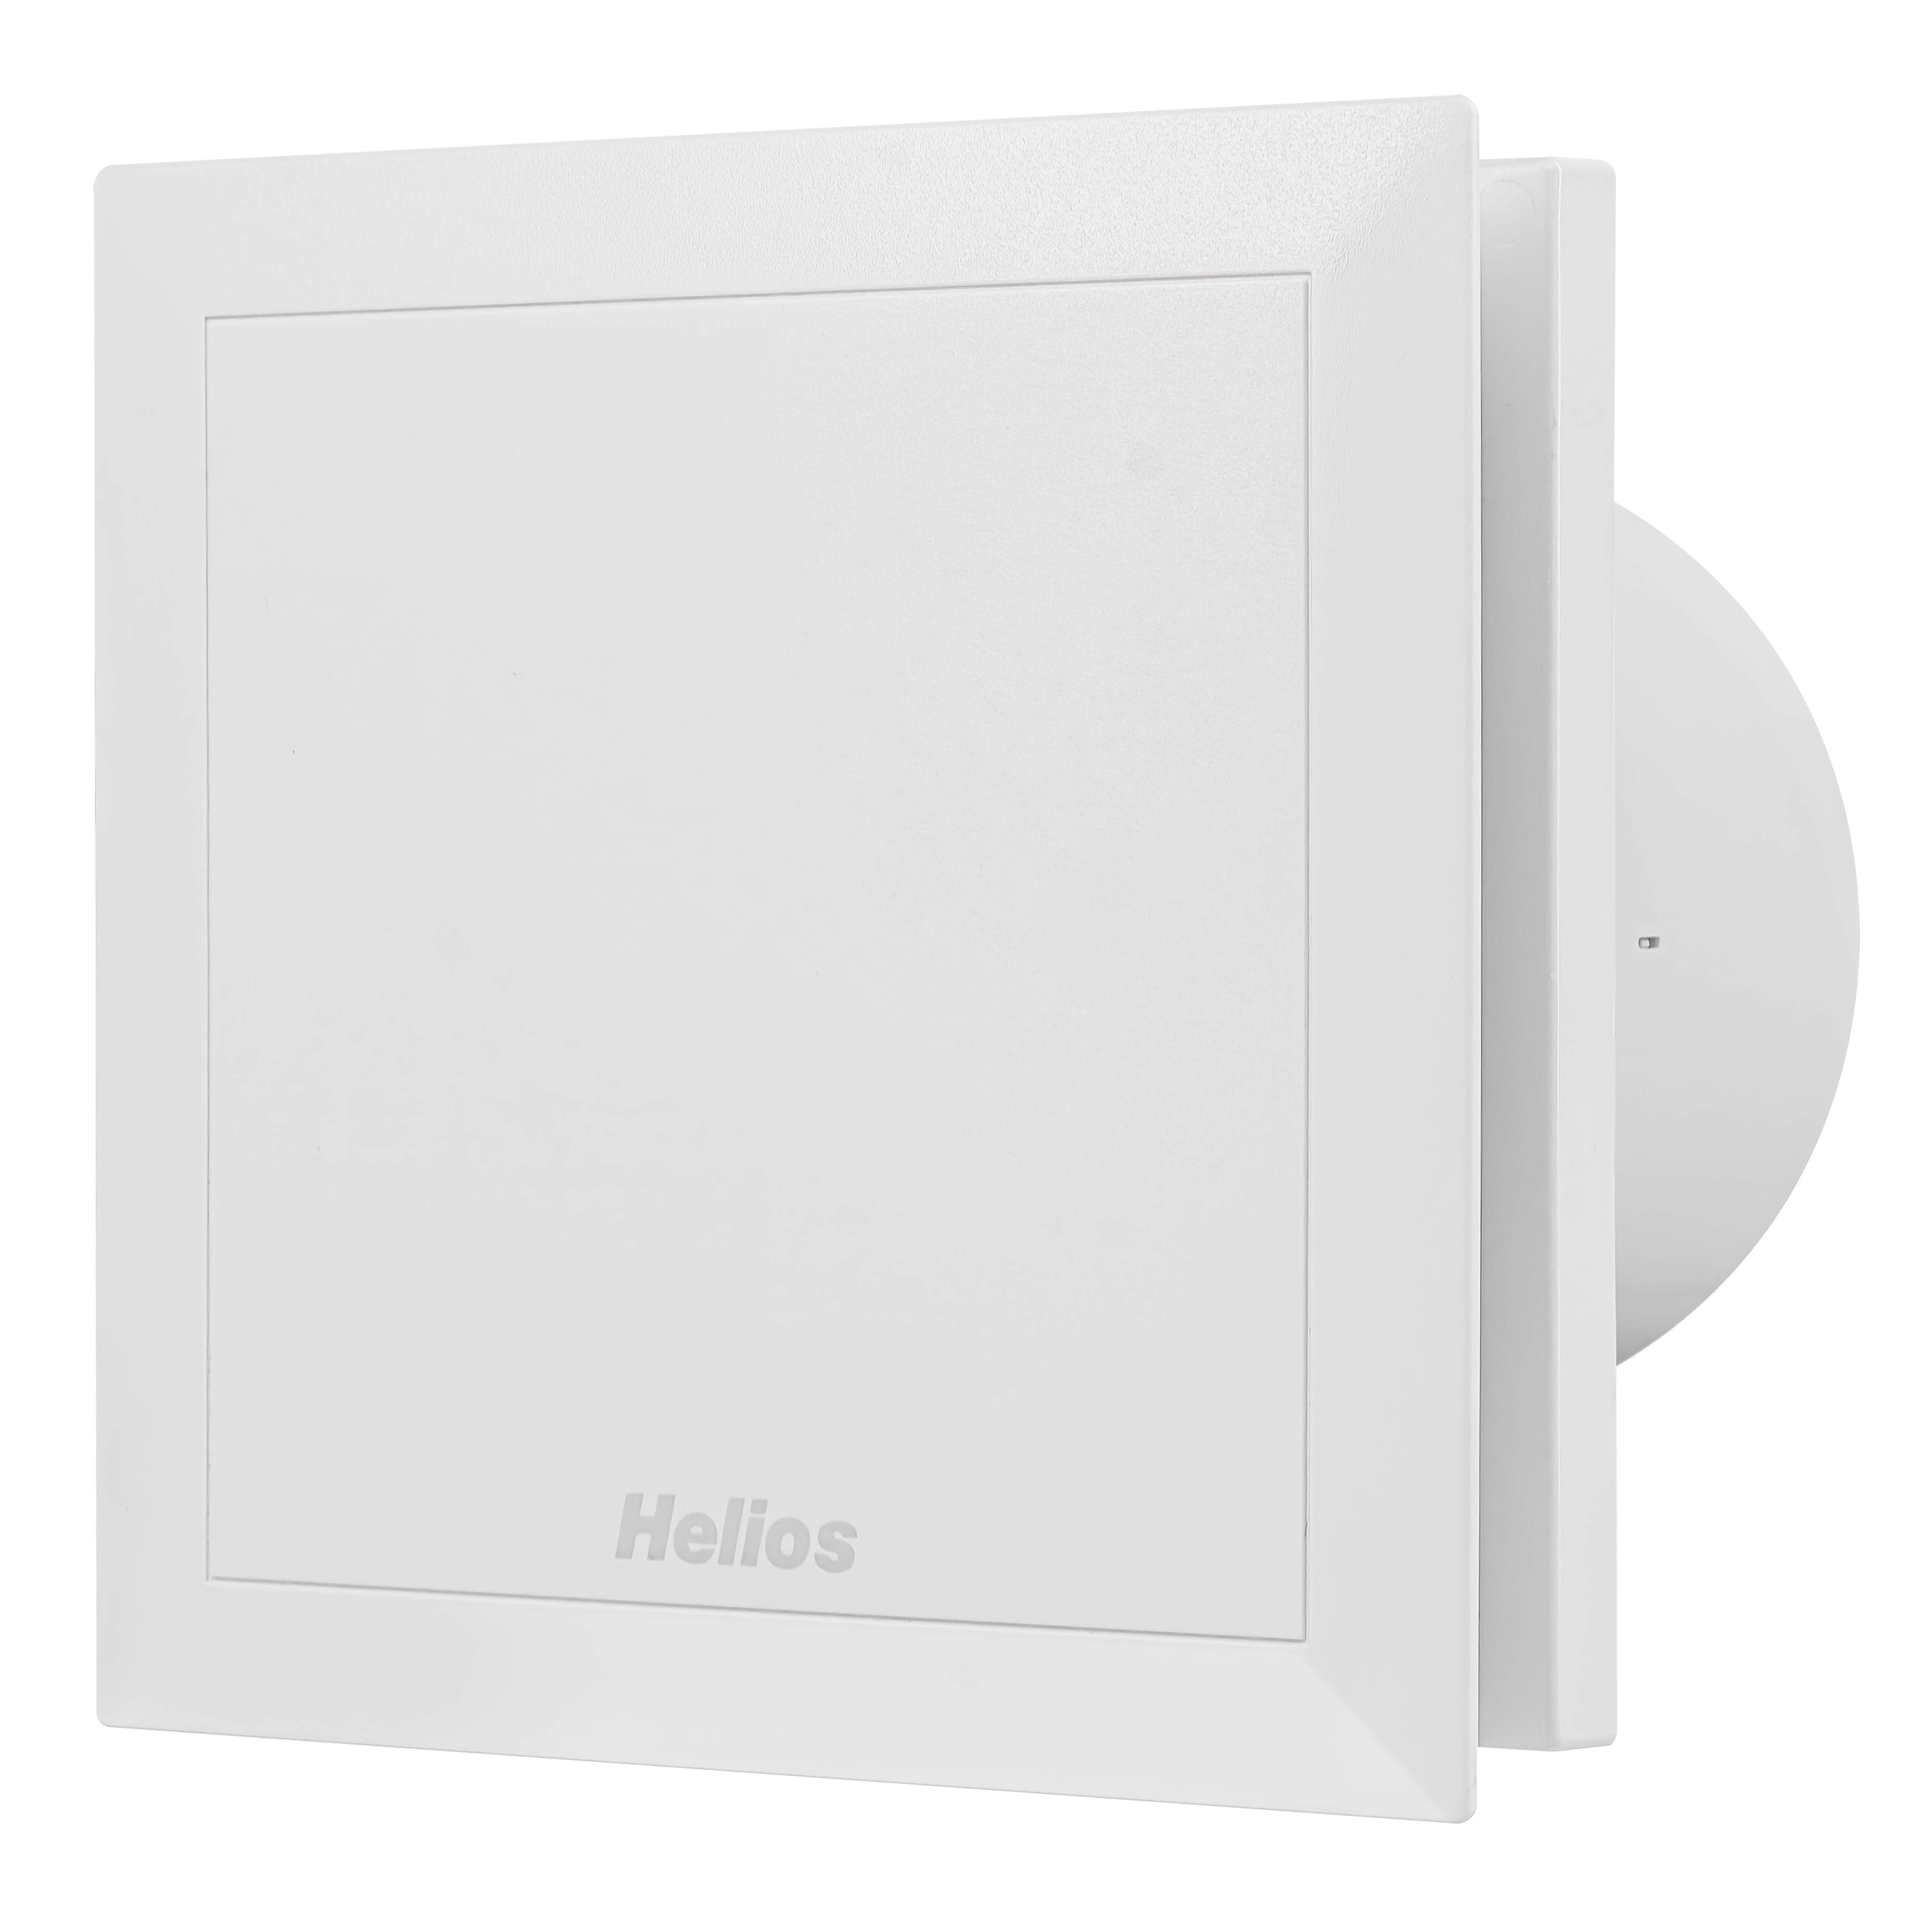 Купить вентилятор helios с обратным клапаном Helios MiniVent M1/120 N/C в Киеве